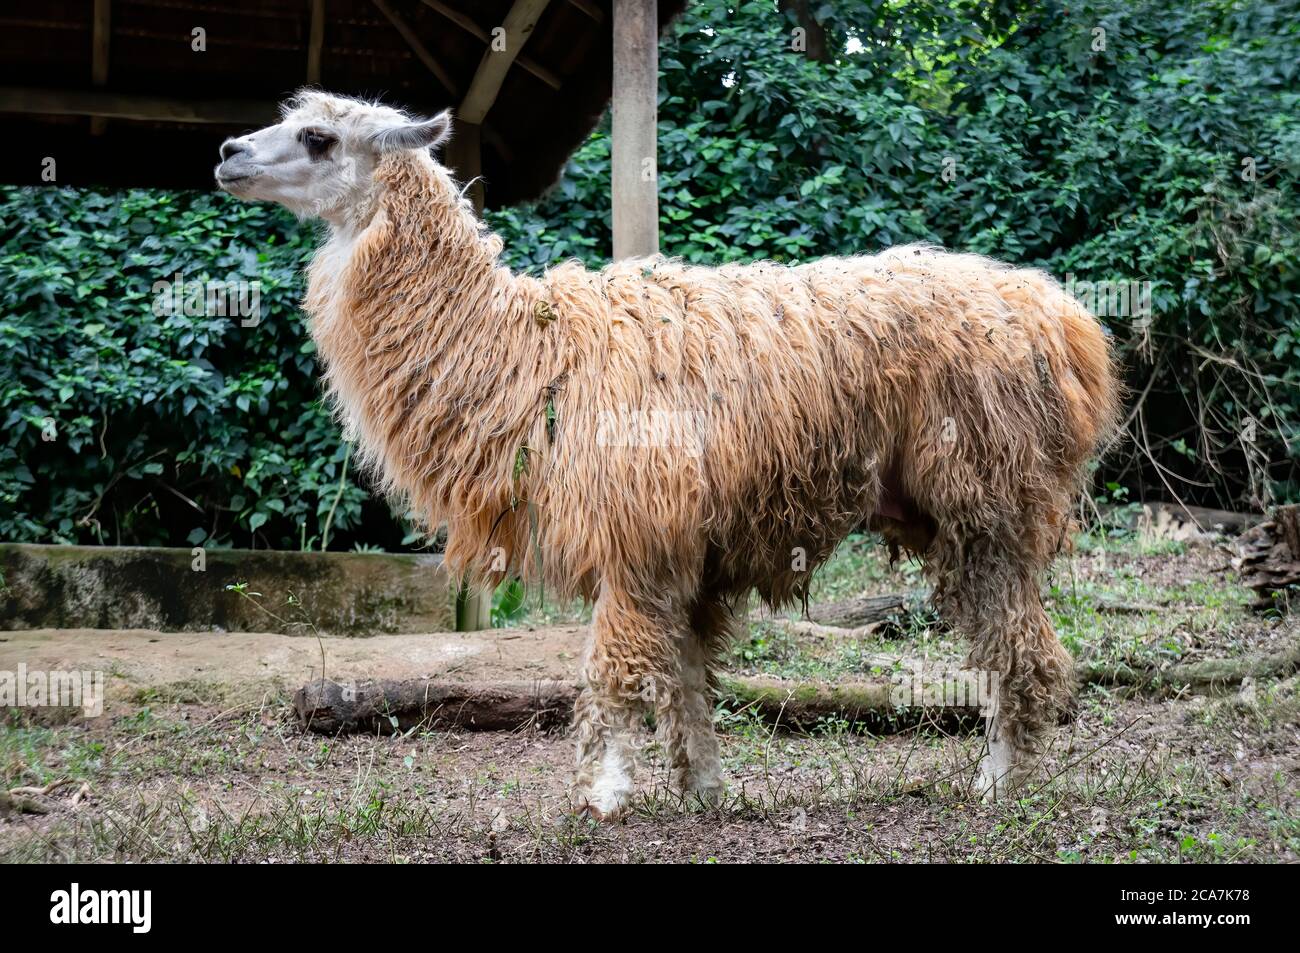 Un lama (AKA lama glama - un cammellide sudamericano addomesticato) che si trova all'interno del suo spazio nel parco zoologico Zoo Safari. Foto Stock